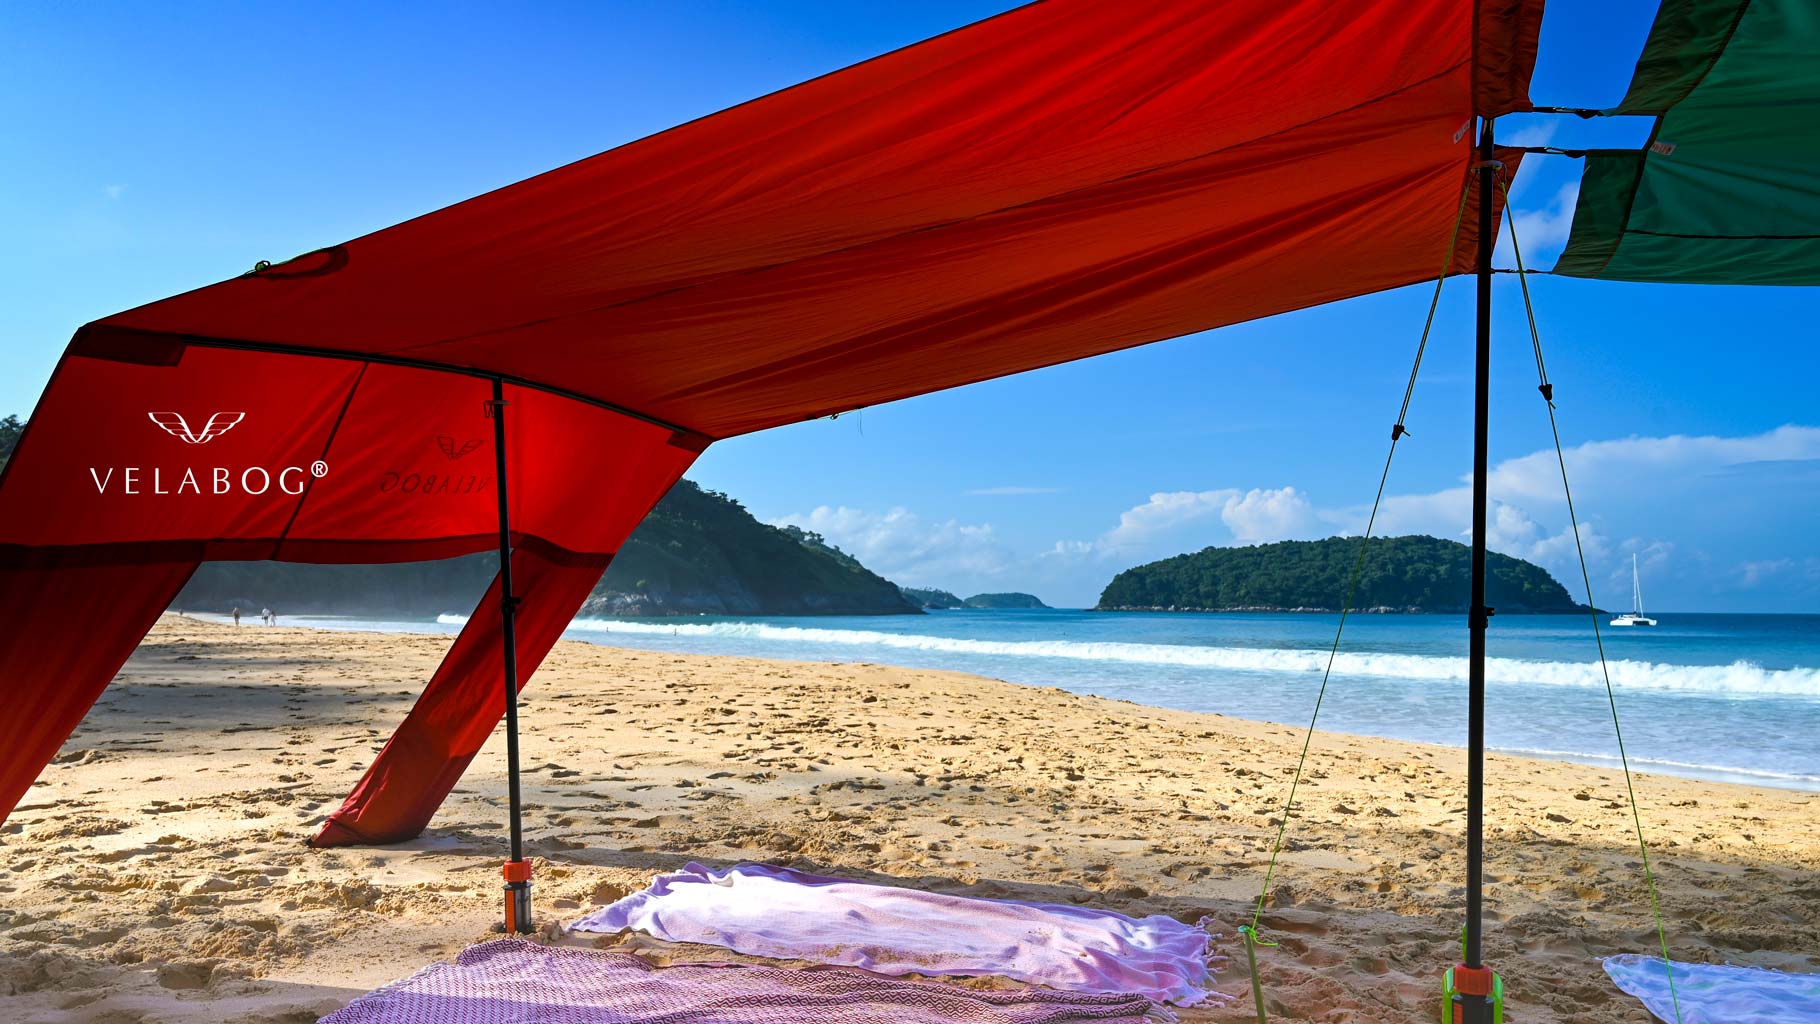 Voile d’ombrage tente plage Velabog Breeze rouge relié à un deuxième voile d’ombrage sur la plage. Combinaison réalisée grâce au kit d’extension pour former une énorme tente de plage offrant beaucoup d’ombre pour toute la famille et les amis. Zoom.